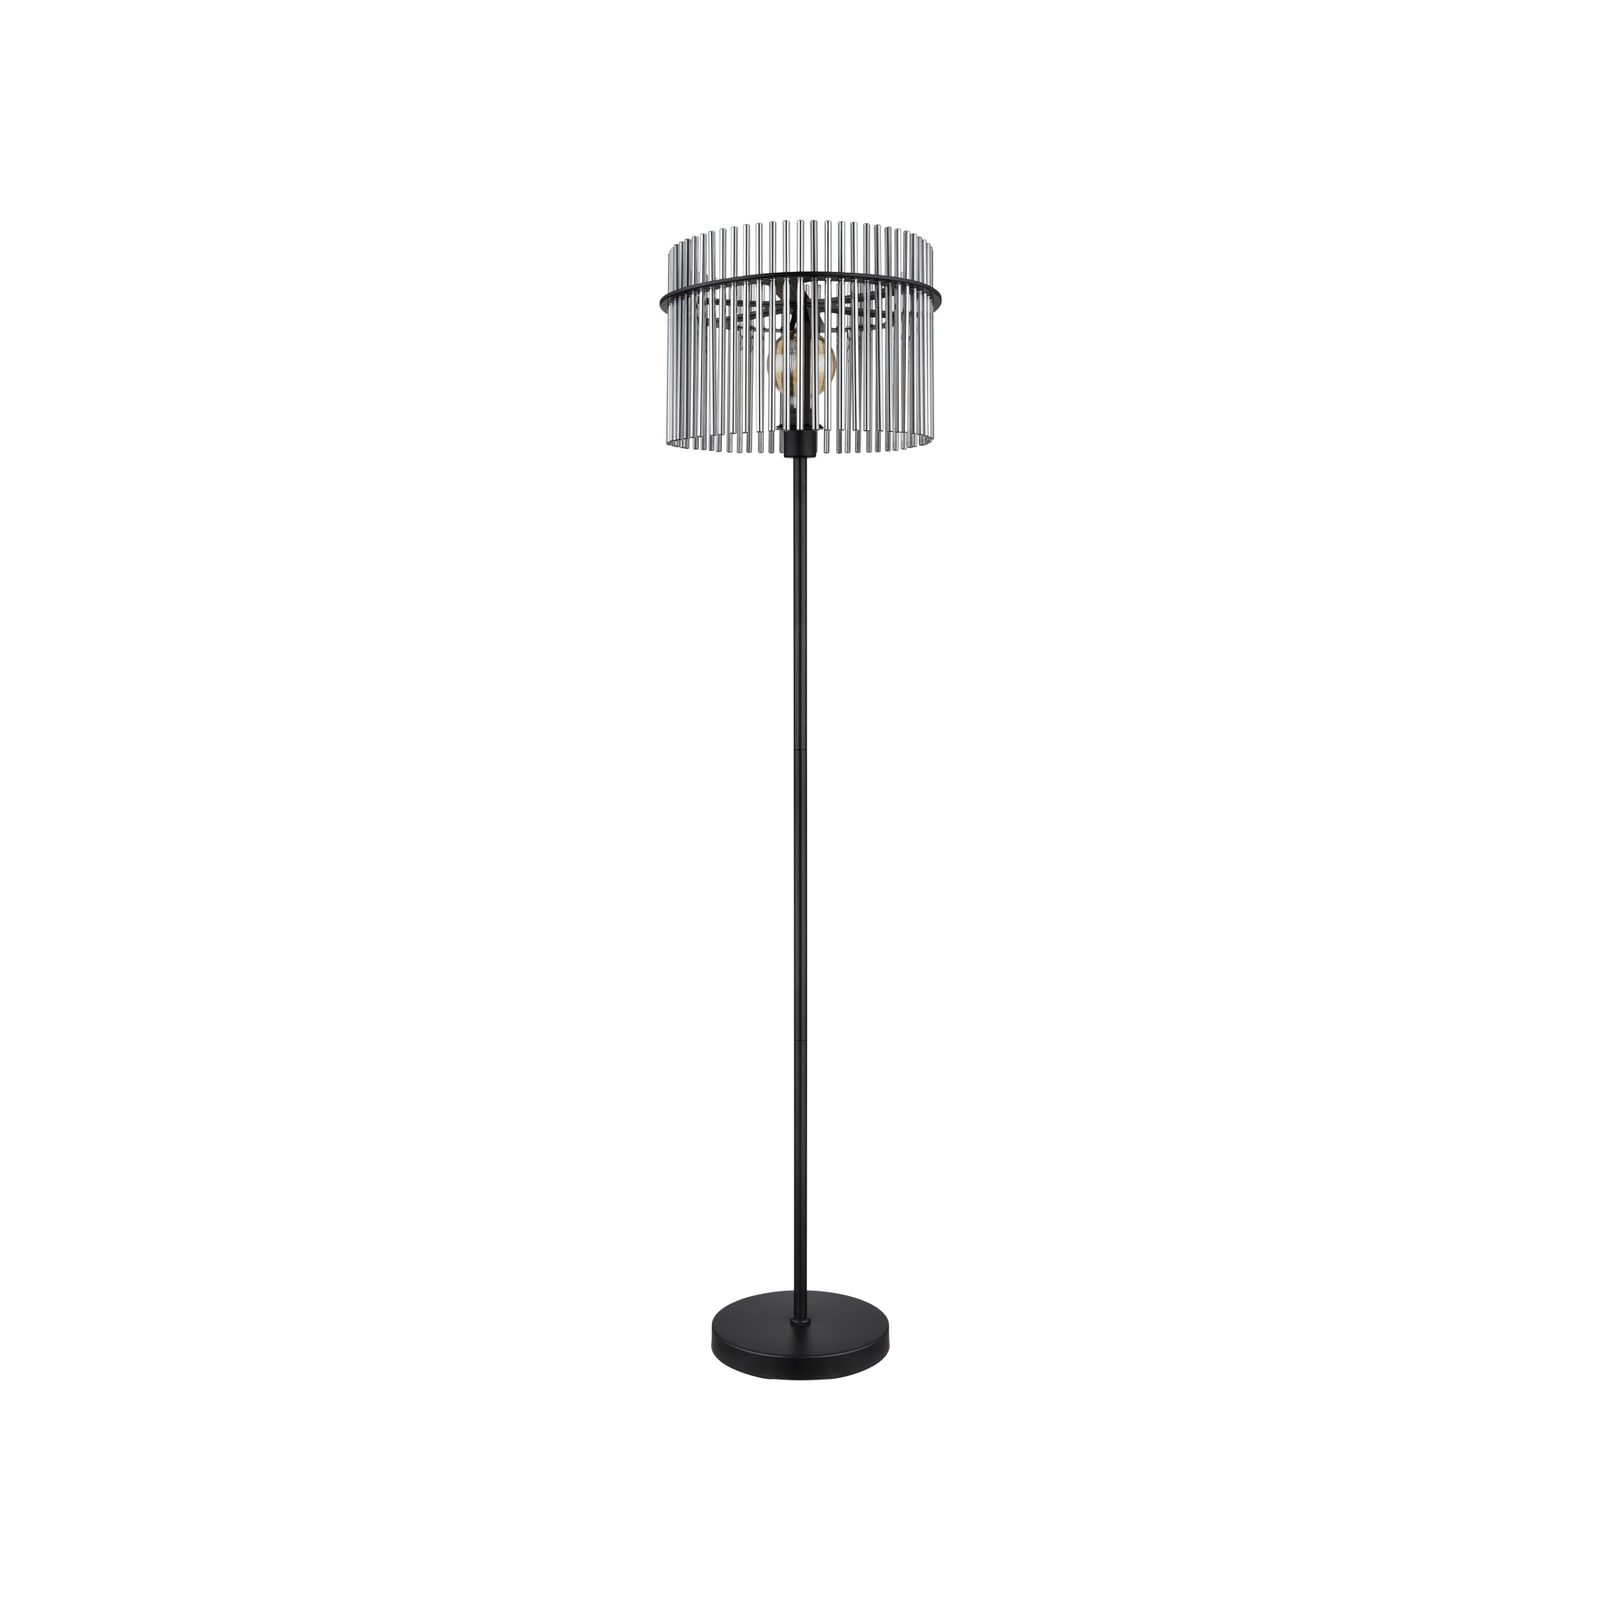 Gorley golvlampa, höjd 152 cm, rökgrå, glas/metall